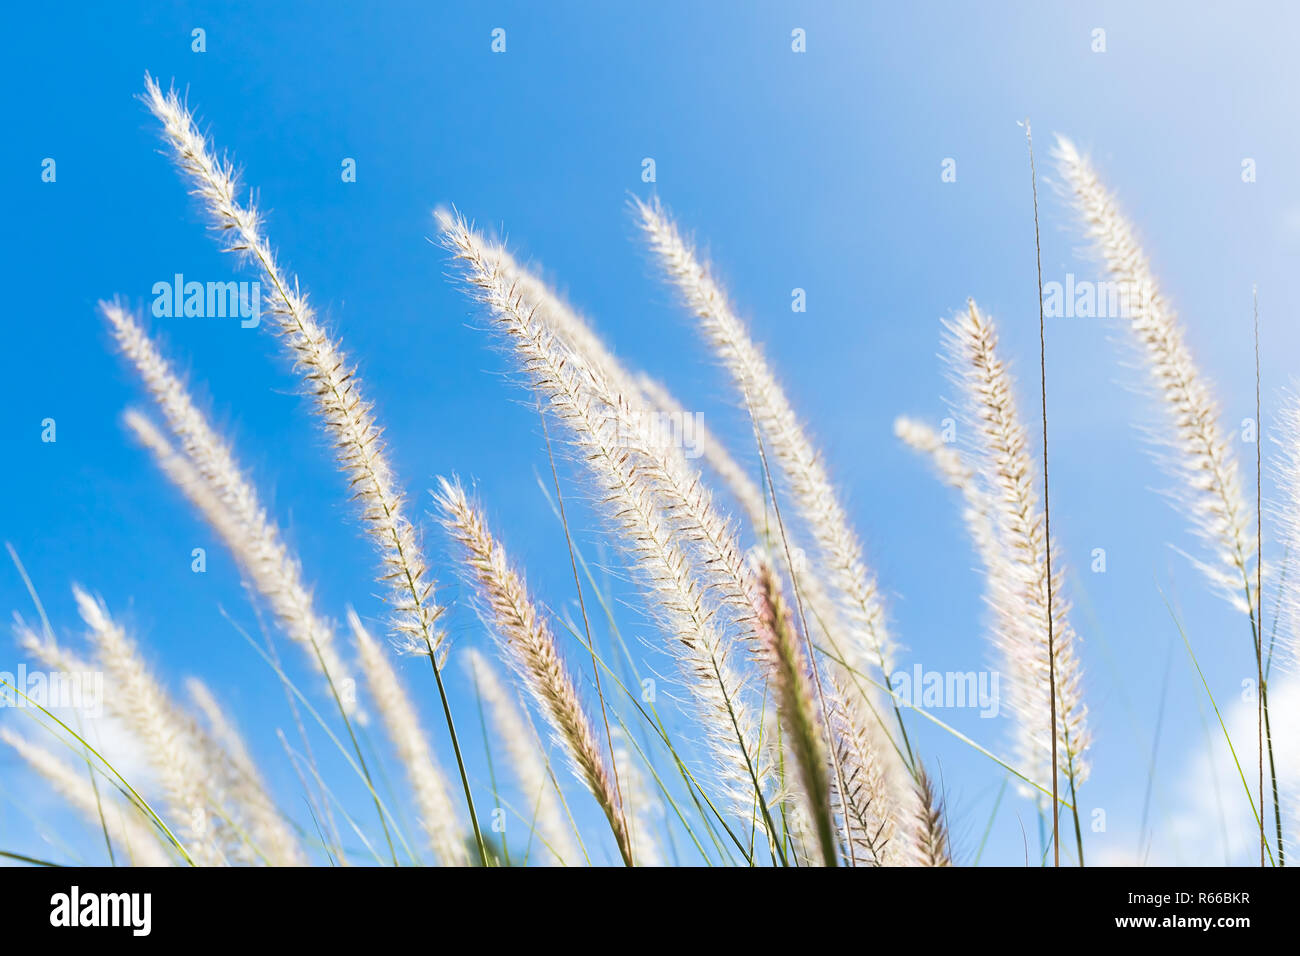 Cogon Grass on blue sky background Stock Photo